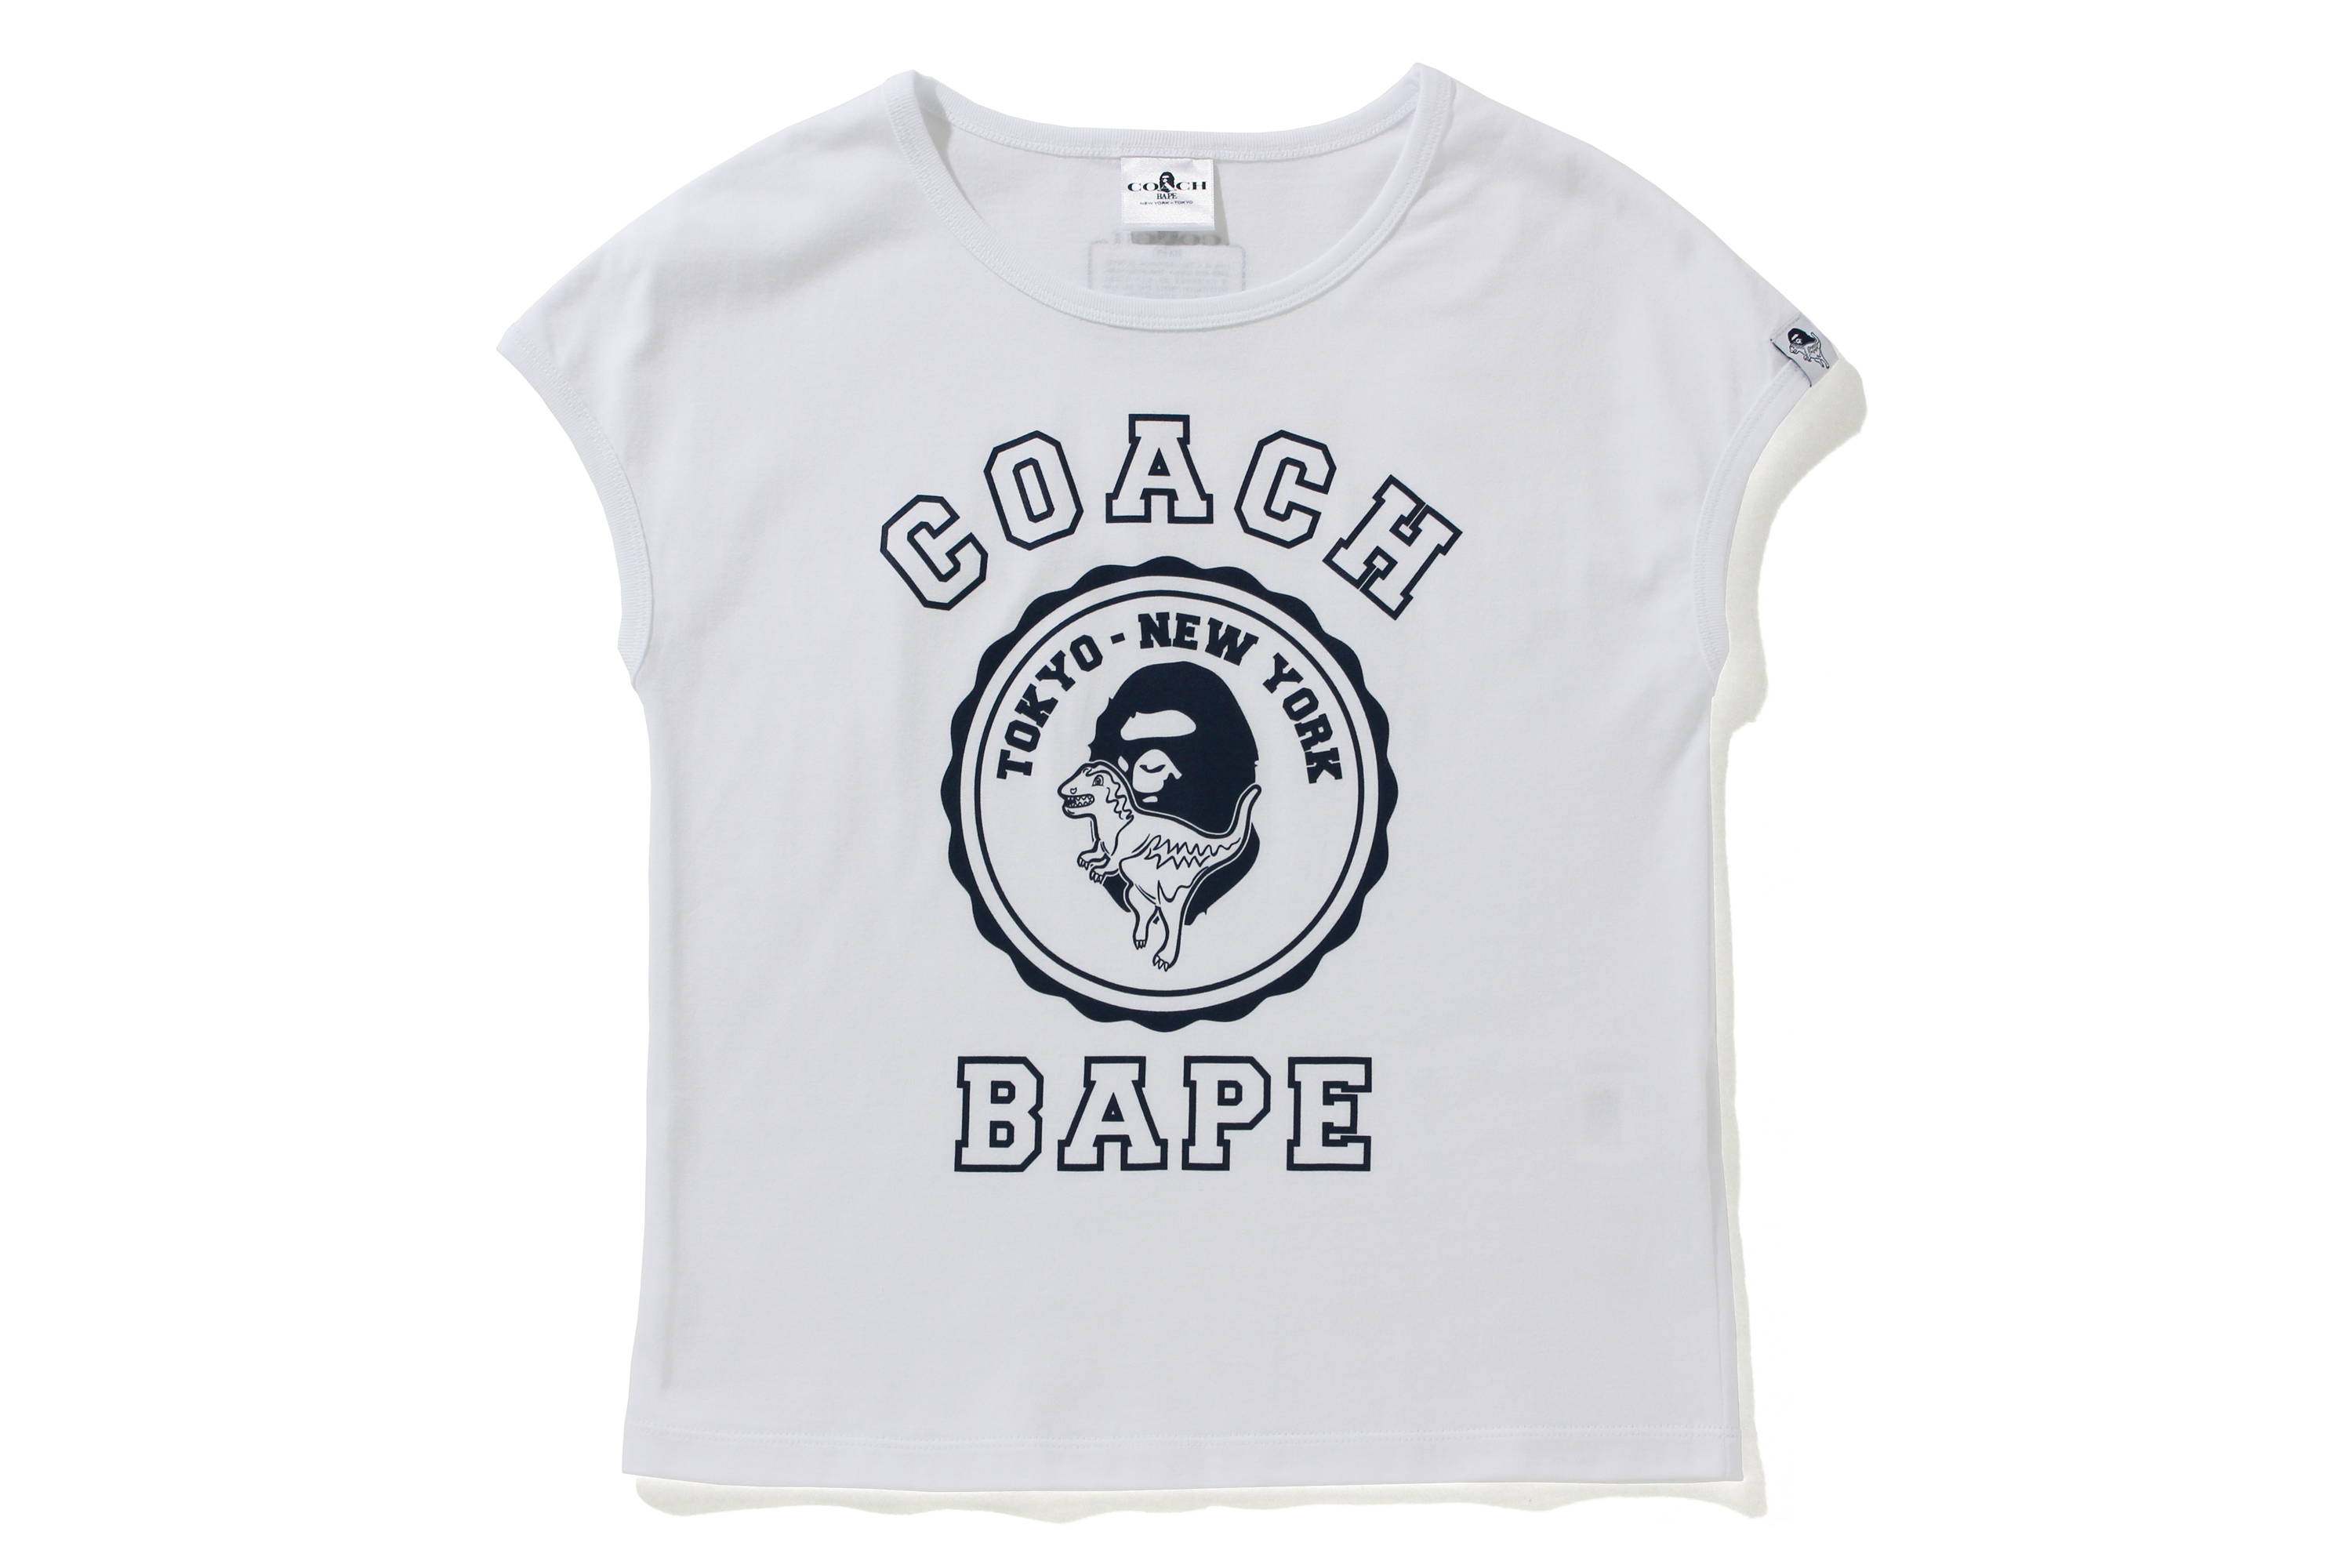 BAPE® X COACH | bape.com